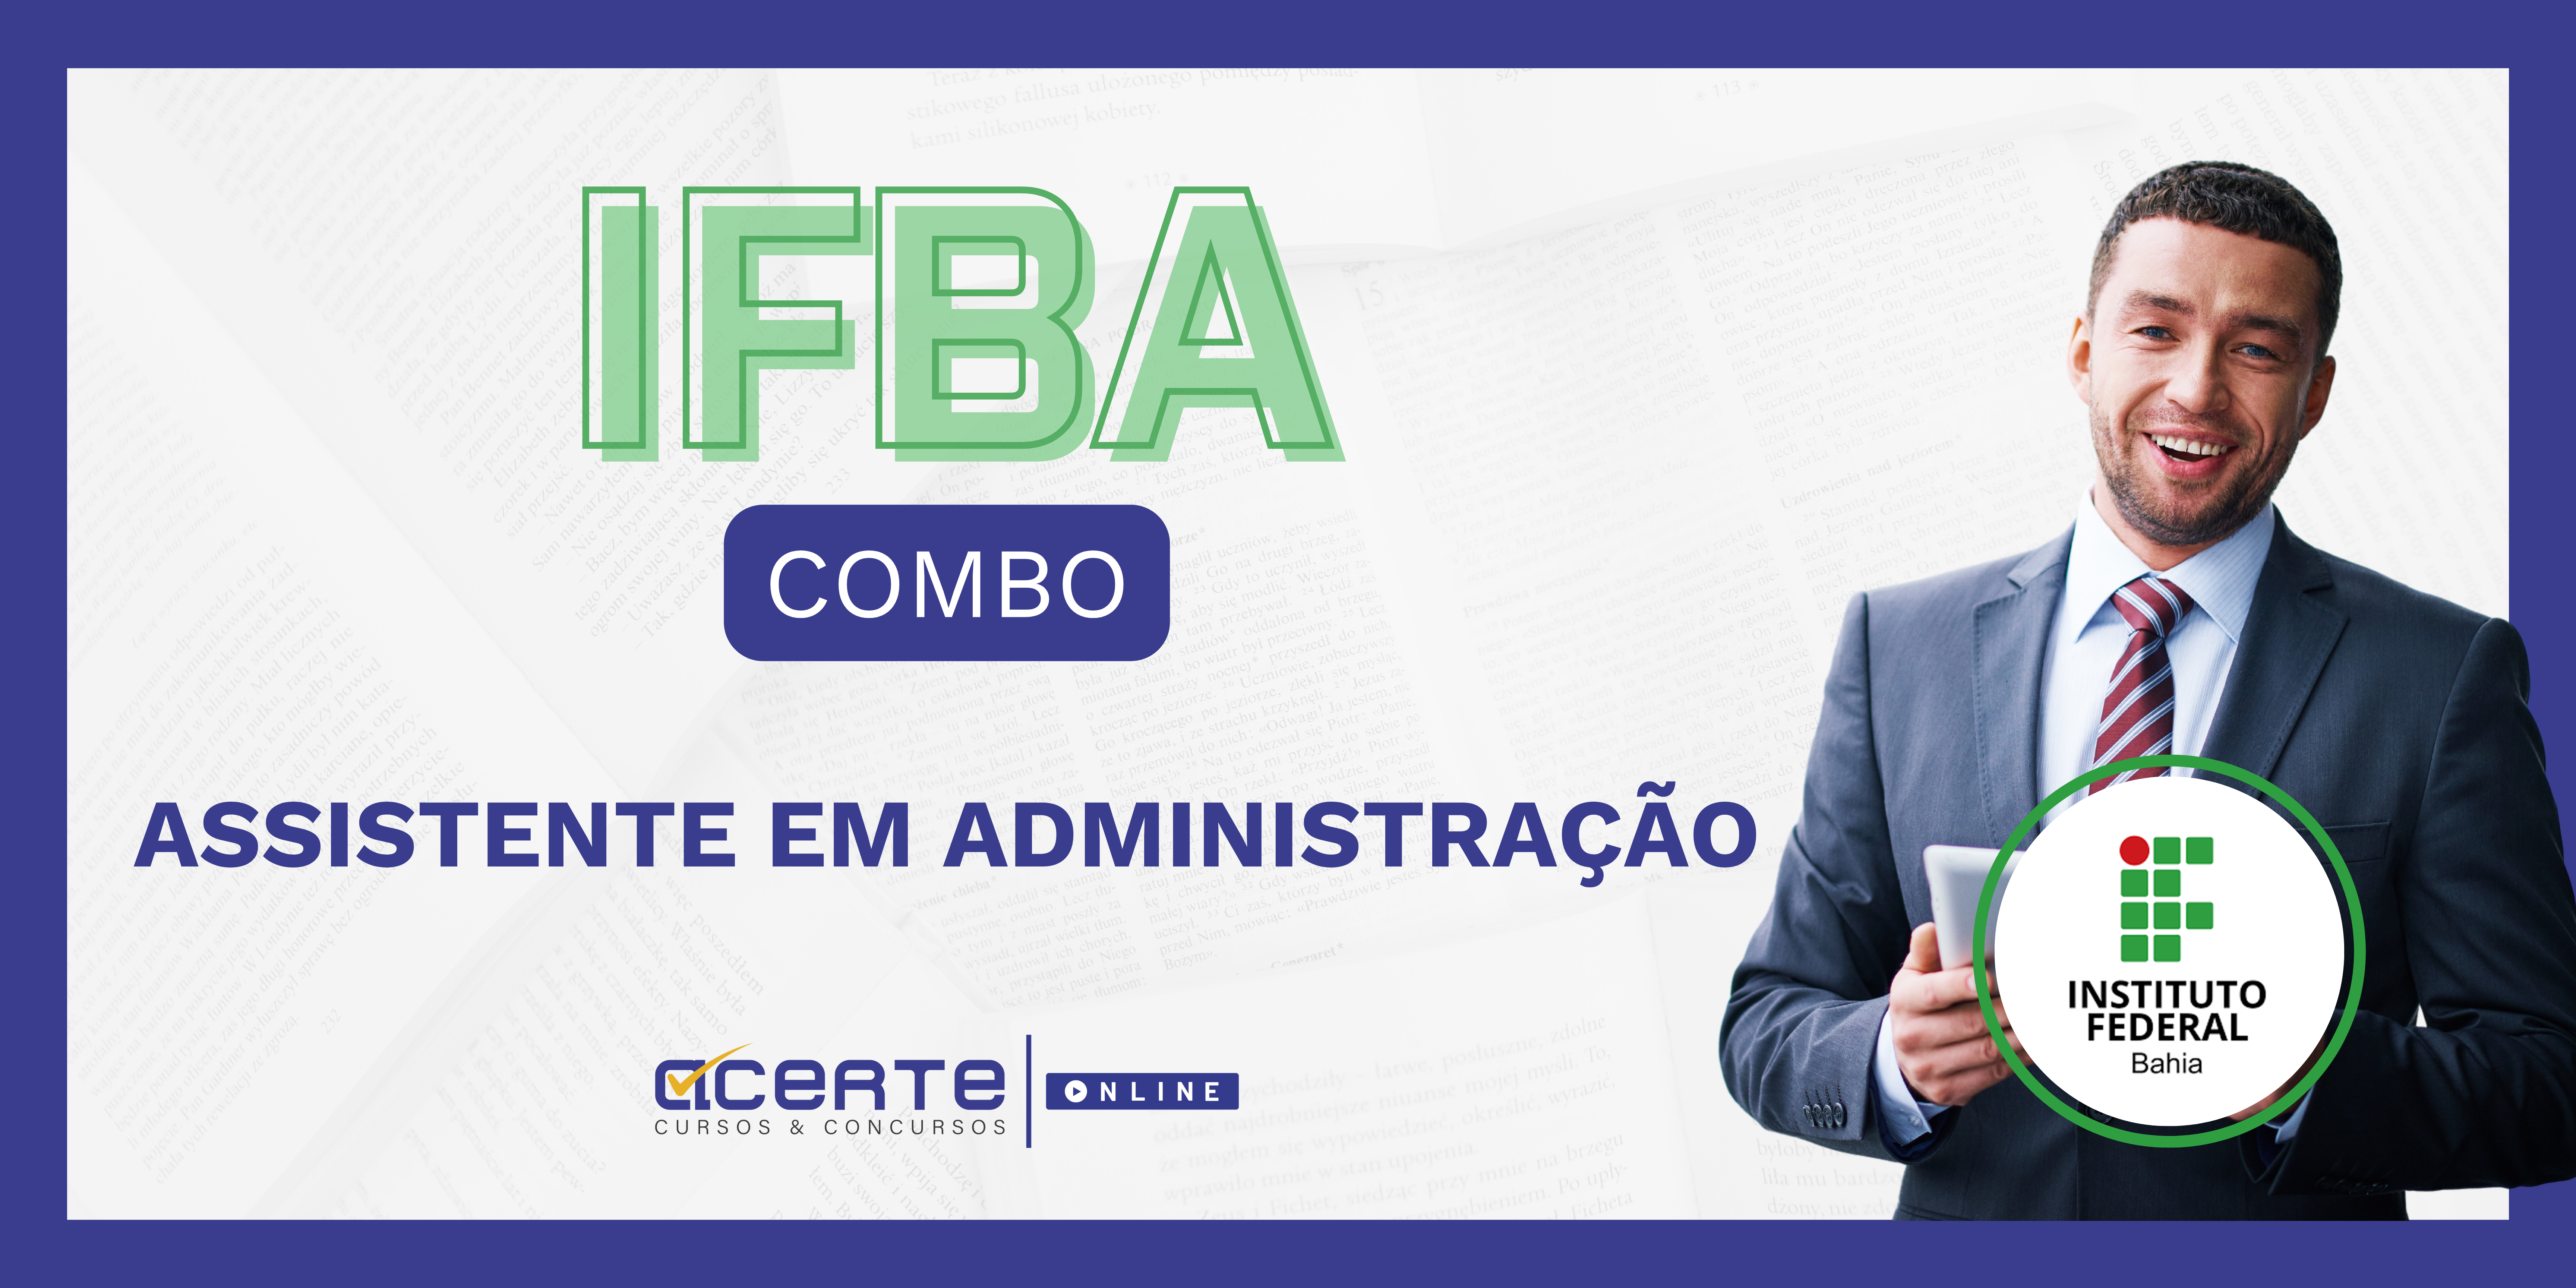 IFBA COMBO - Assistente em Administração - Edital Publicado - ONLINE